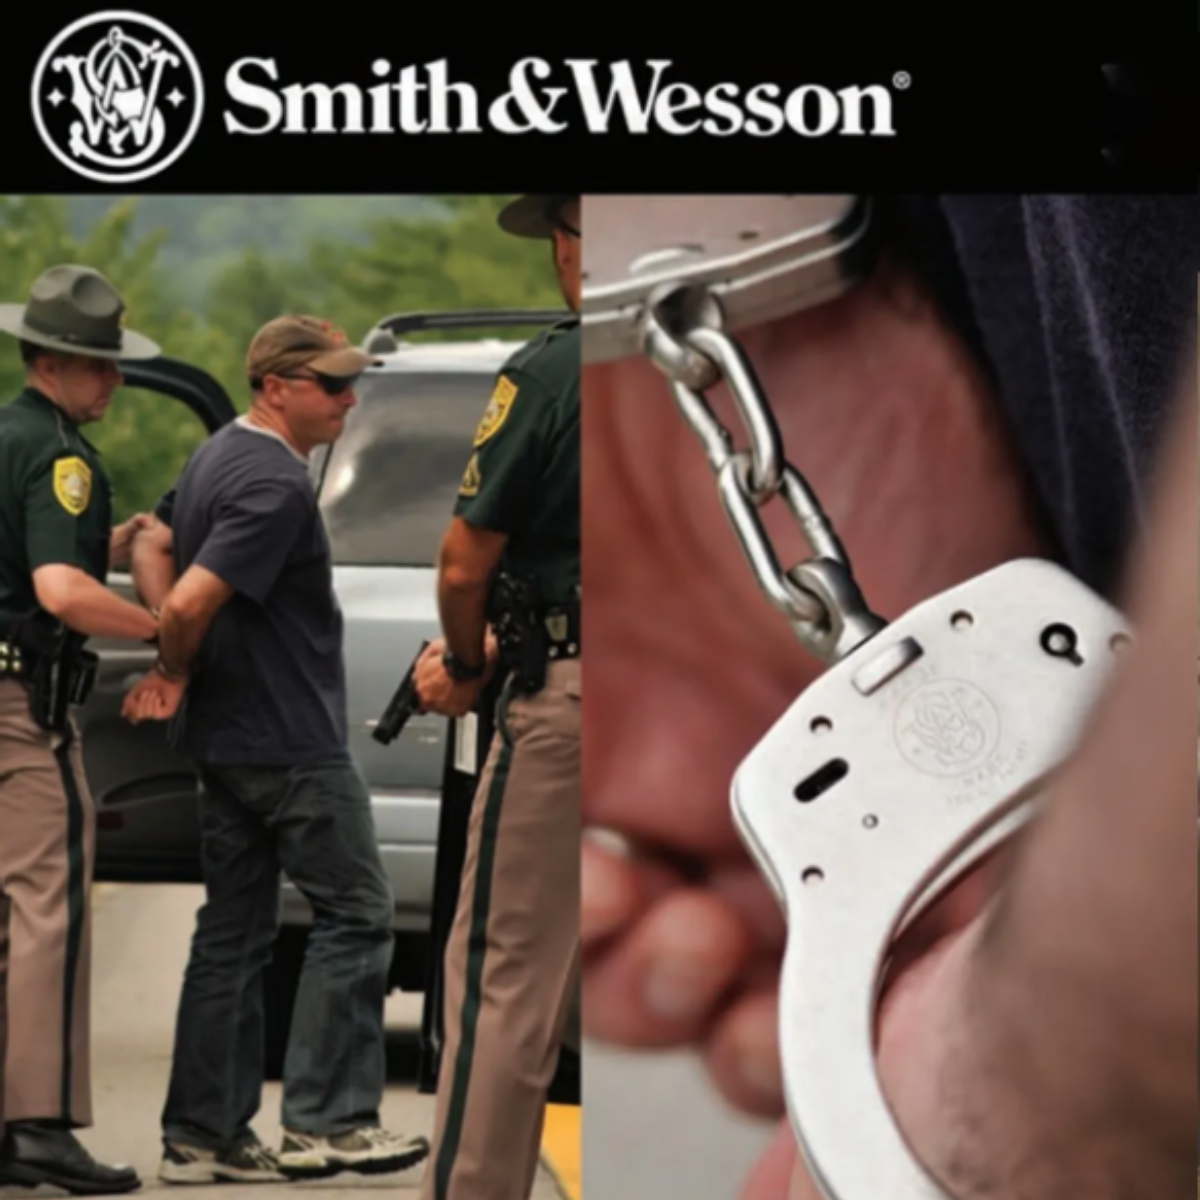 Esposas Policía  Smith & Wesson Niquelada Llaves Gratis